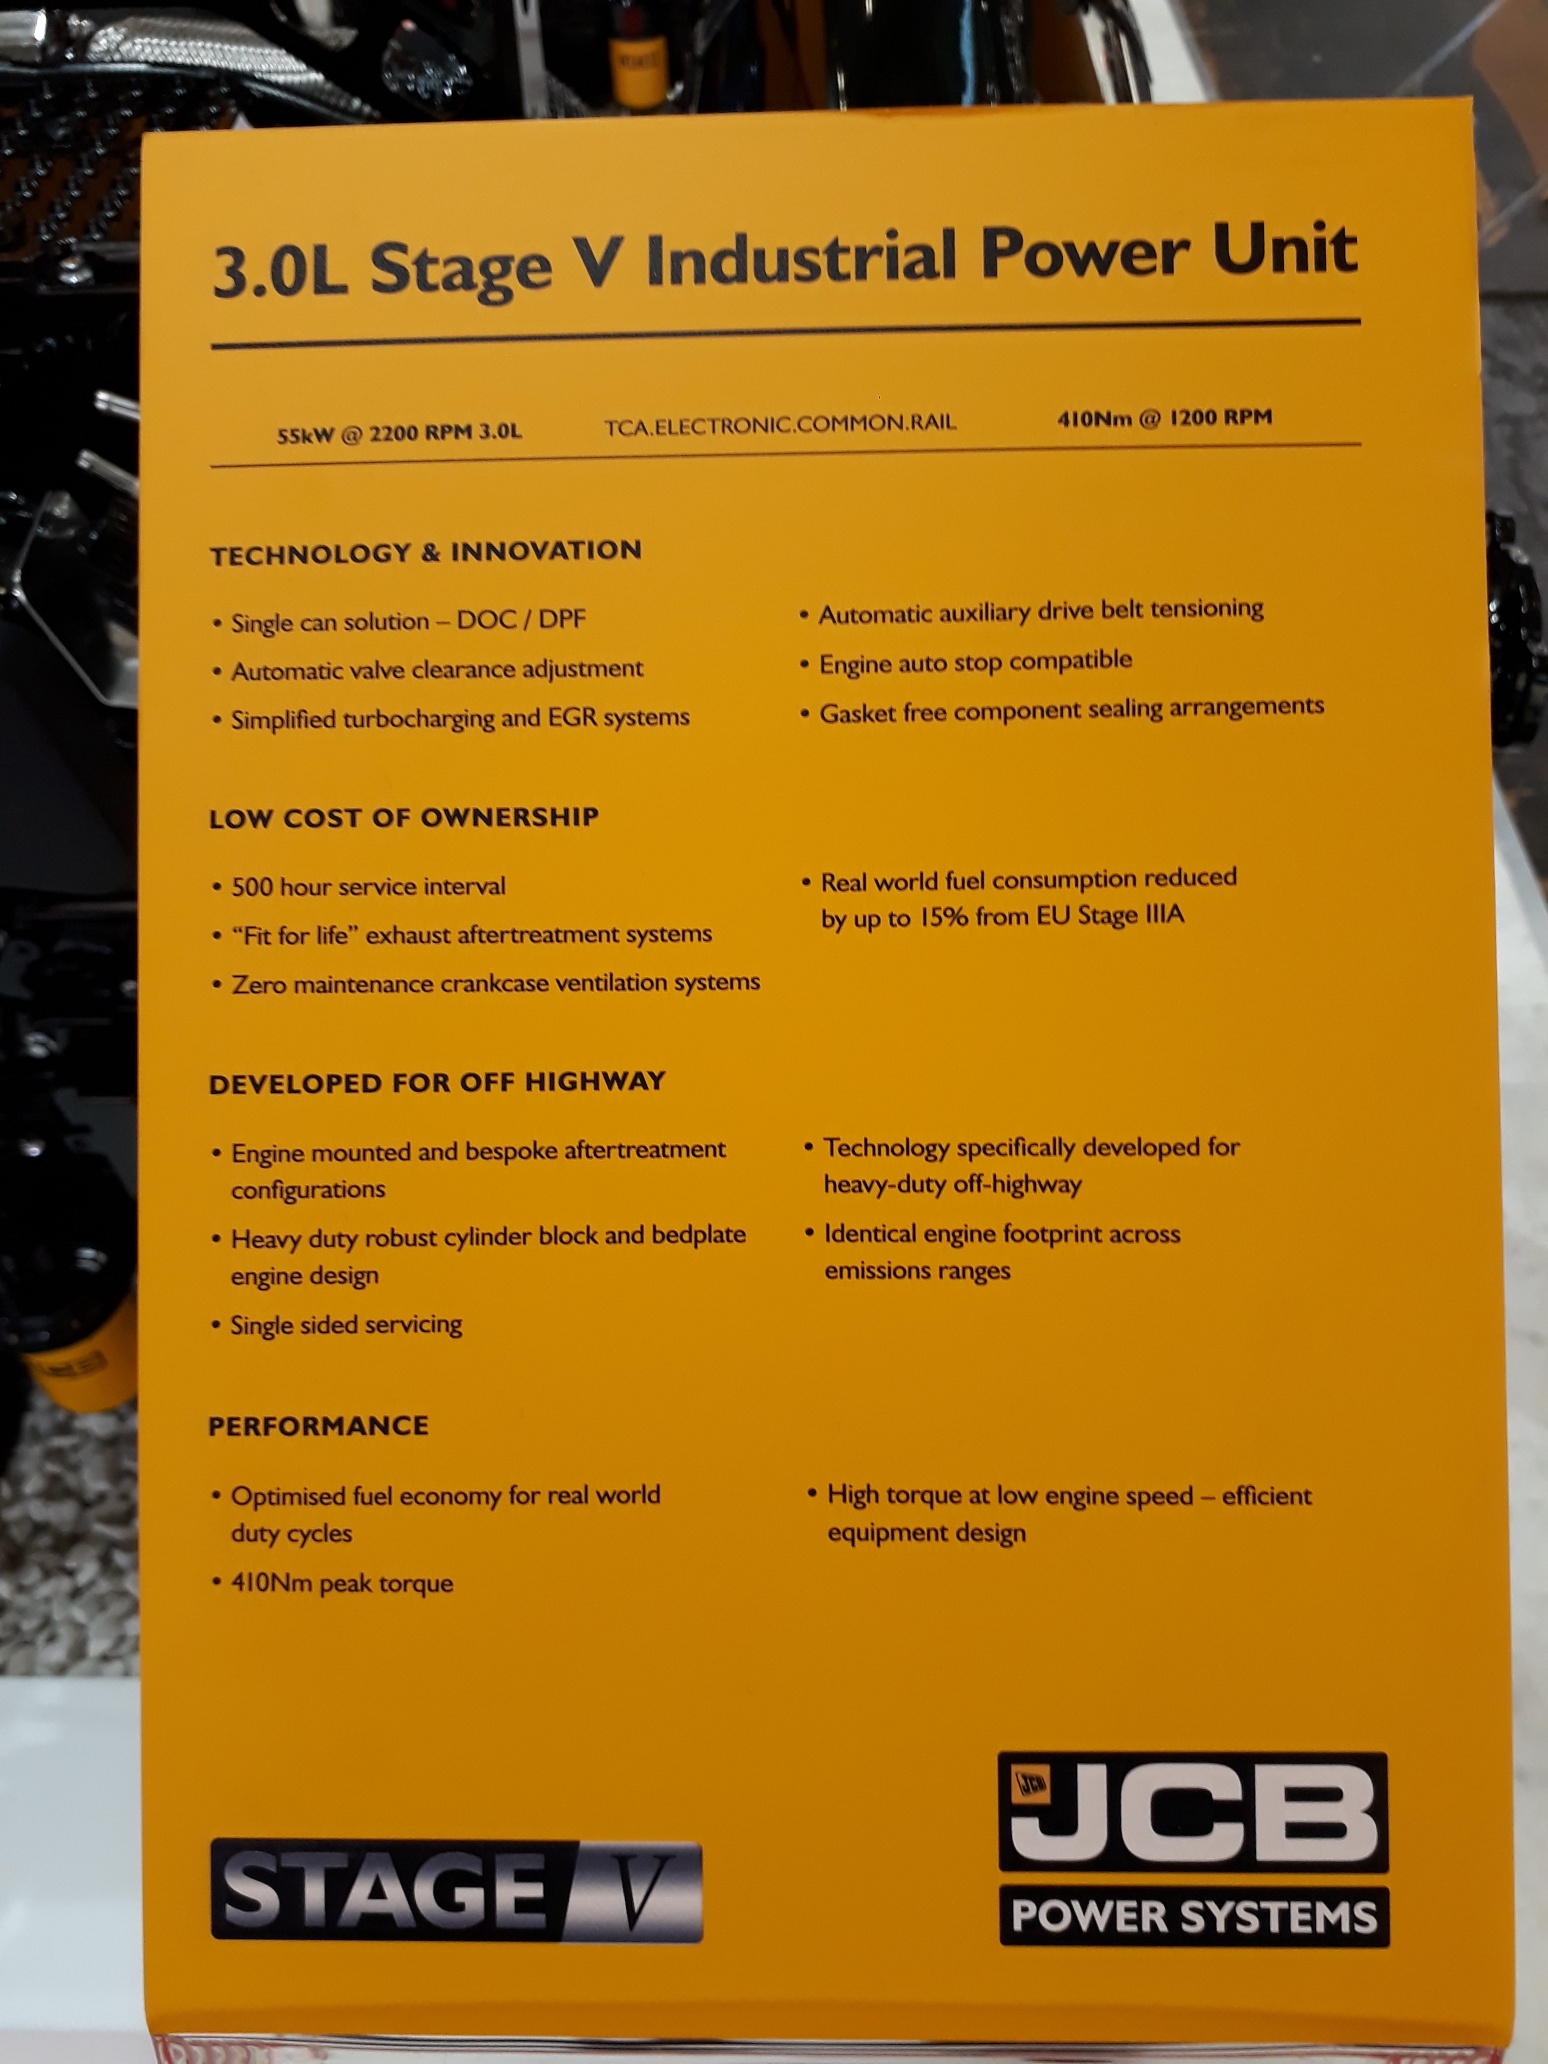 Produktblatt der Übersicht der Leistungsdaten der JCB 3.0L Stage V industrial Power Unit